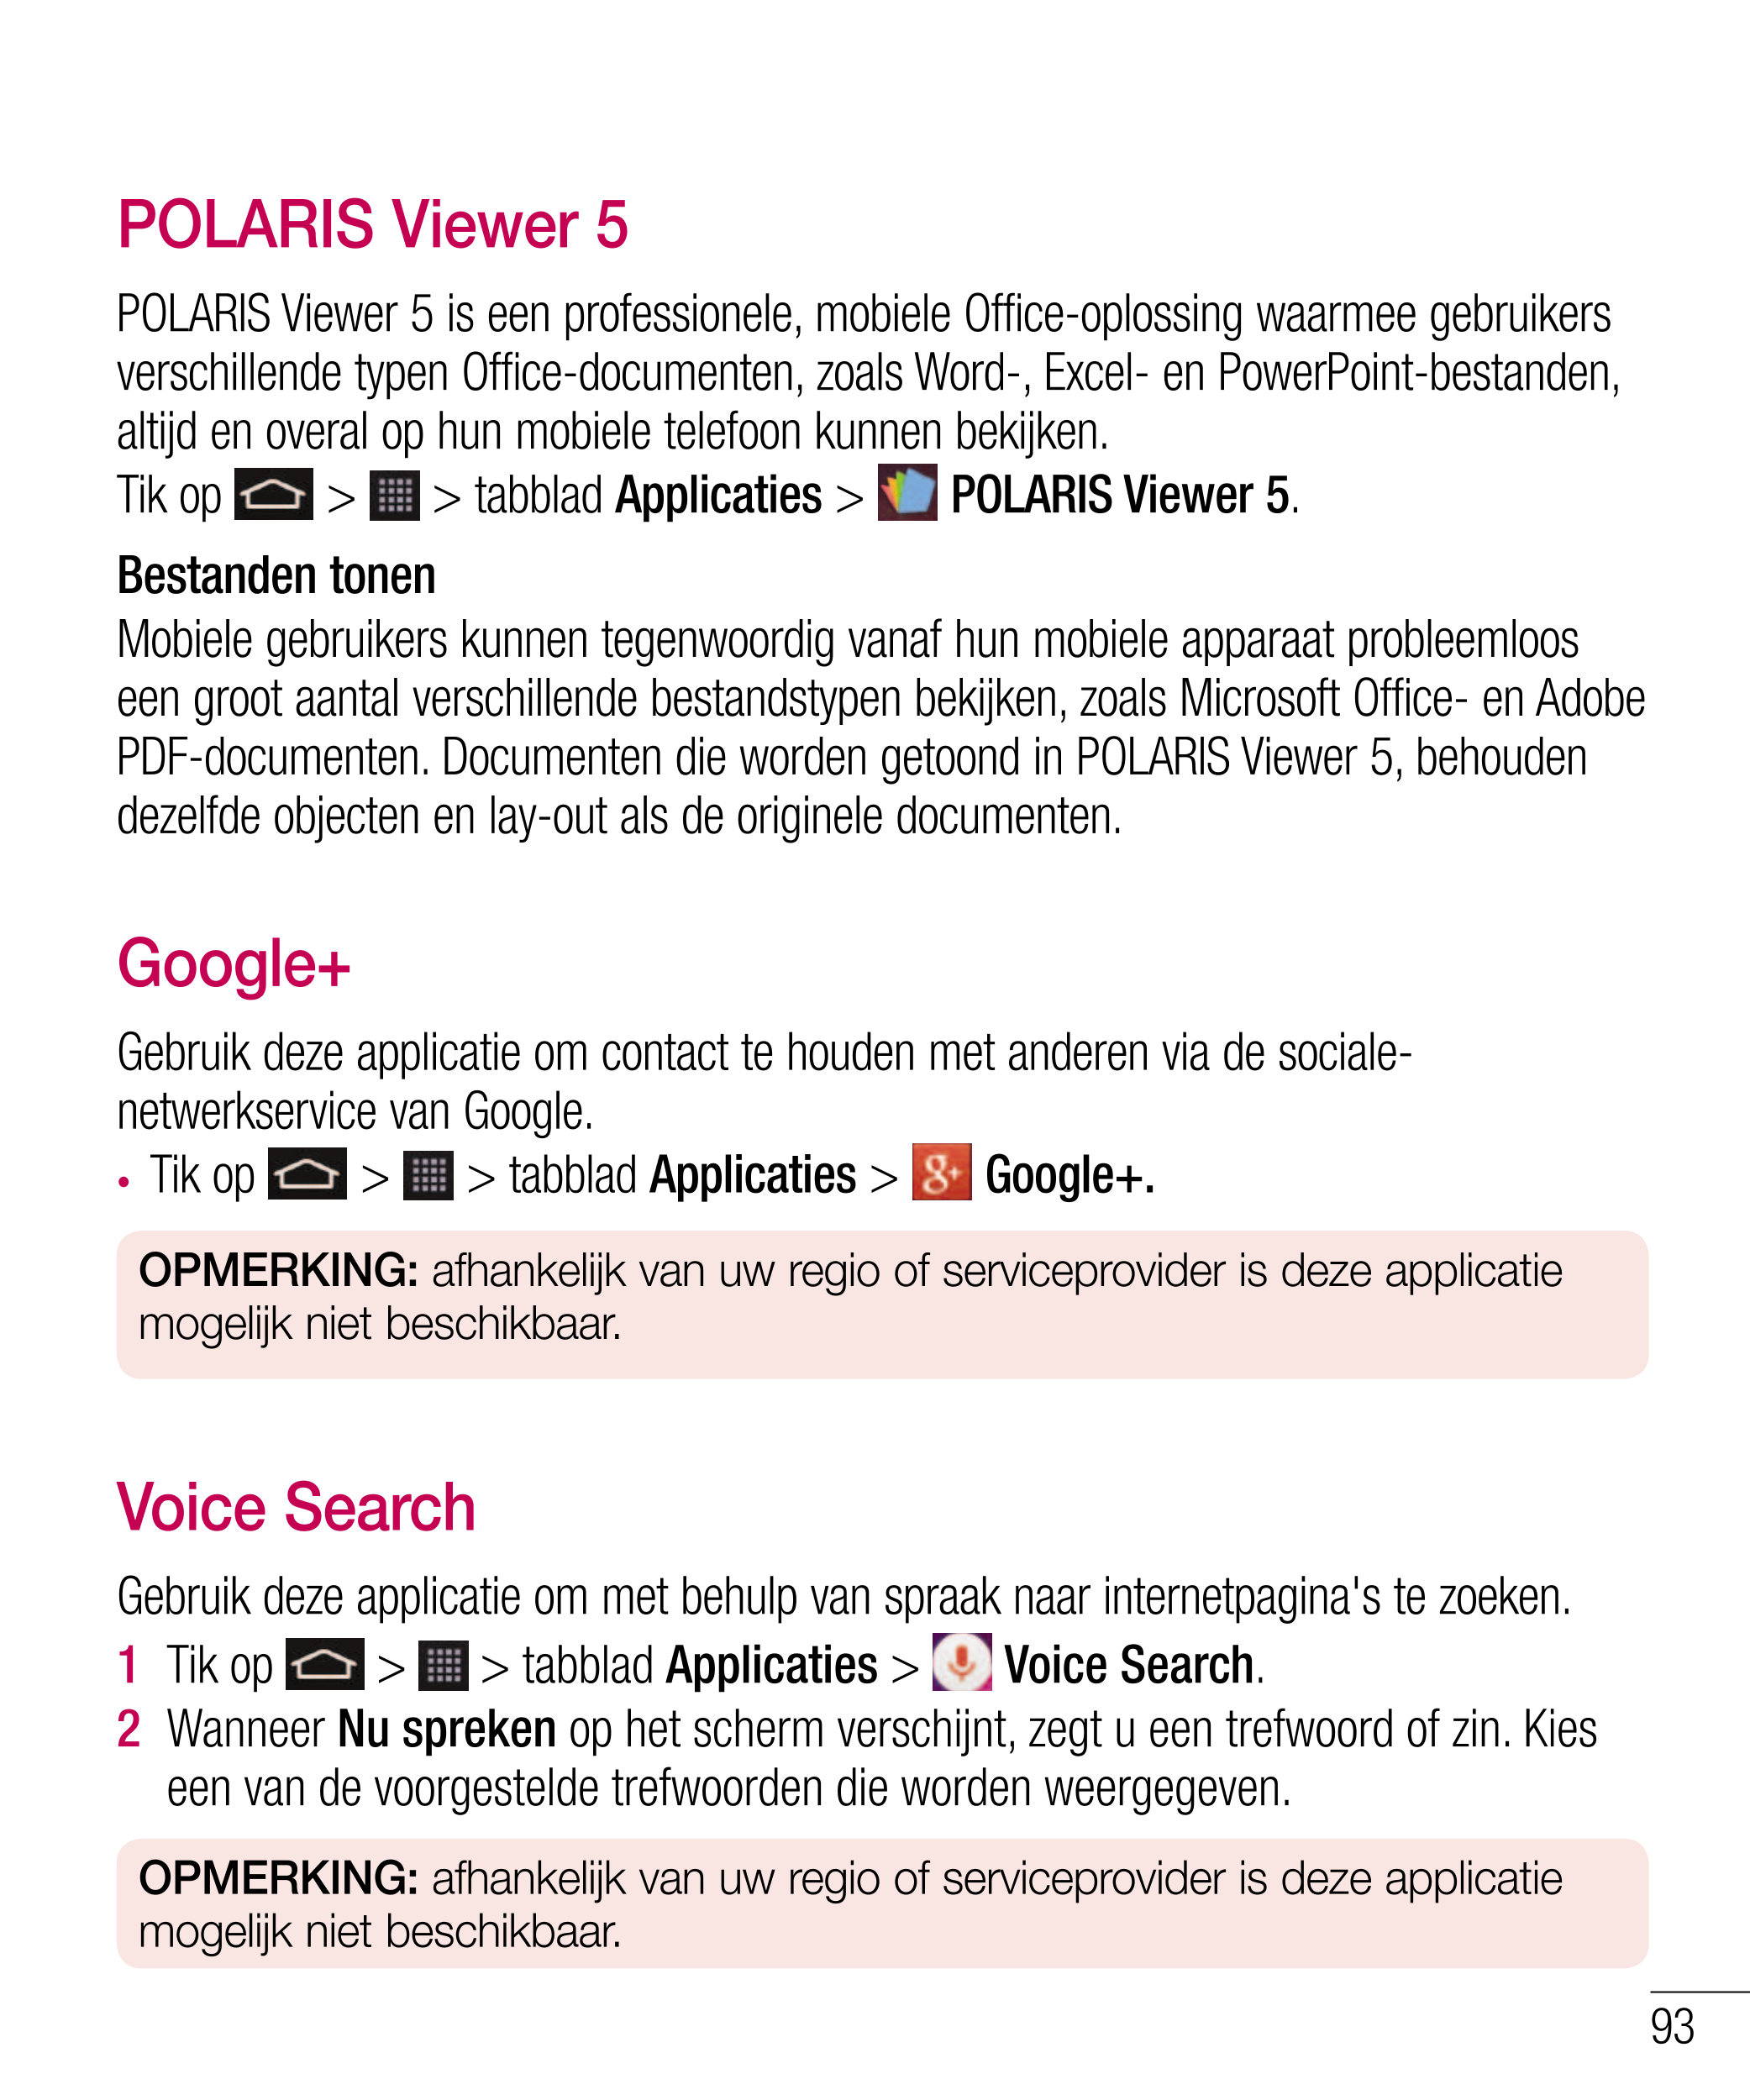 POLARIS Viewer 5
POLARIS Viewer 5 is een professionele, mobiele Office-oplossing waarmee gebruikers 
verschillende typen Office-